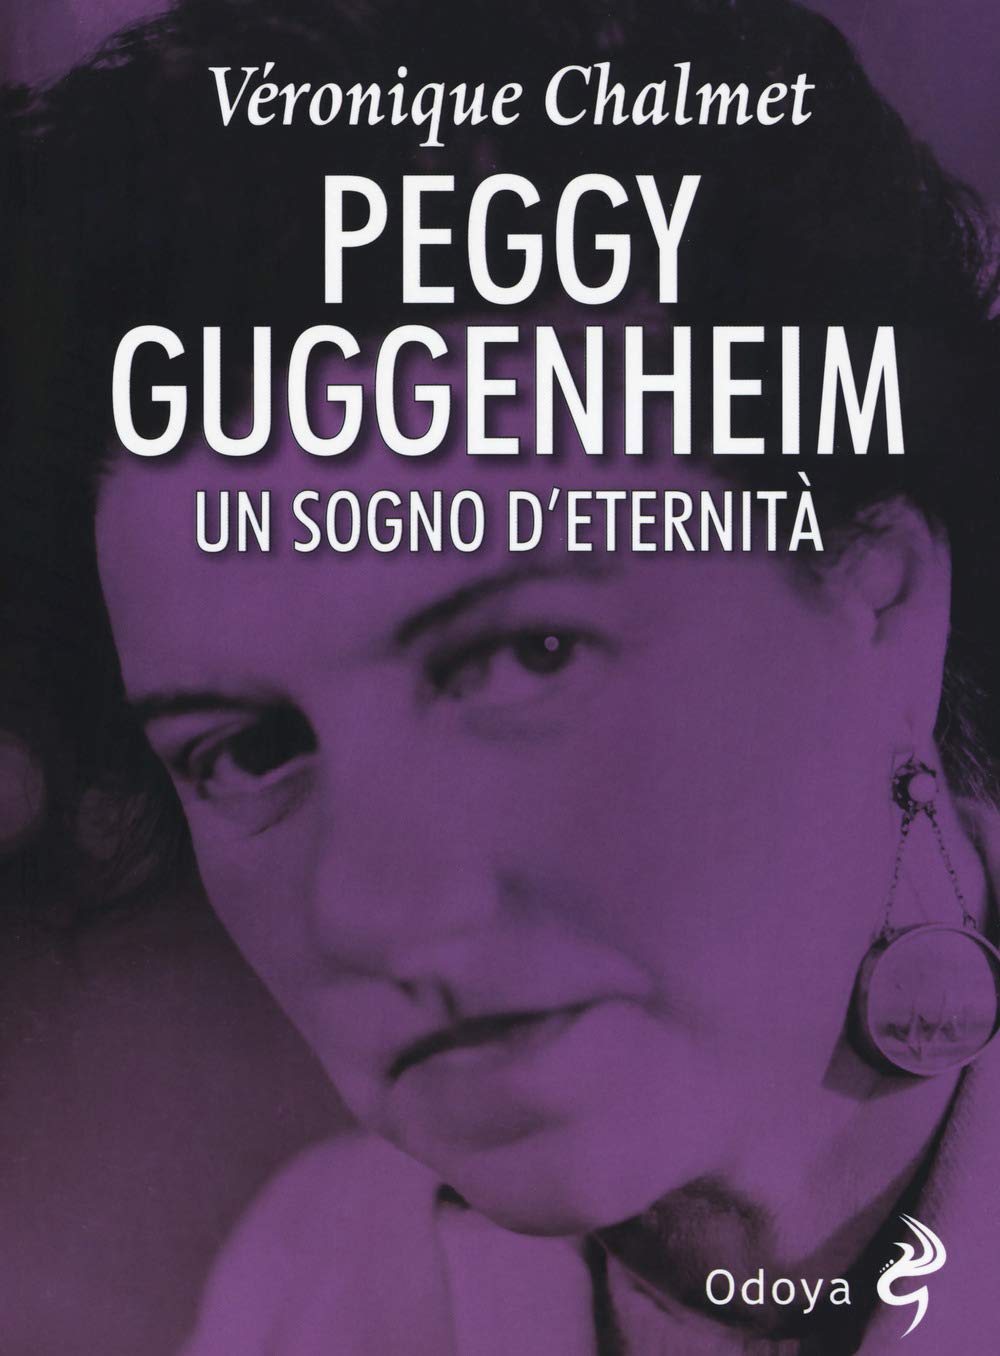 Libri Veronique Chalmet - Peggy Guggenheim. Un Sogno D'Eternita NUOVO SIGILLATO, EDIZIONE DEL 30/08/2018 SUBITO DISPONIBILE